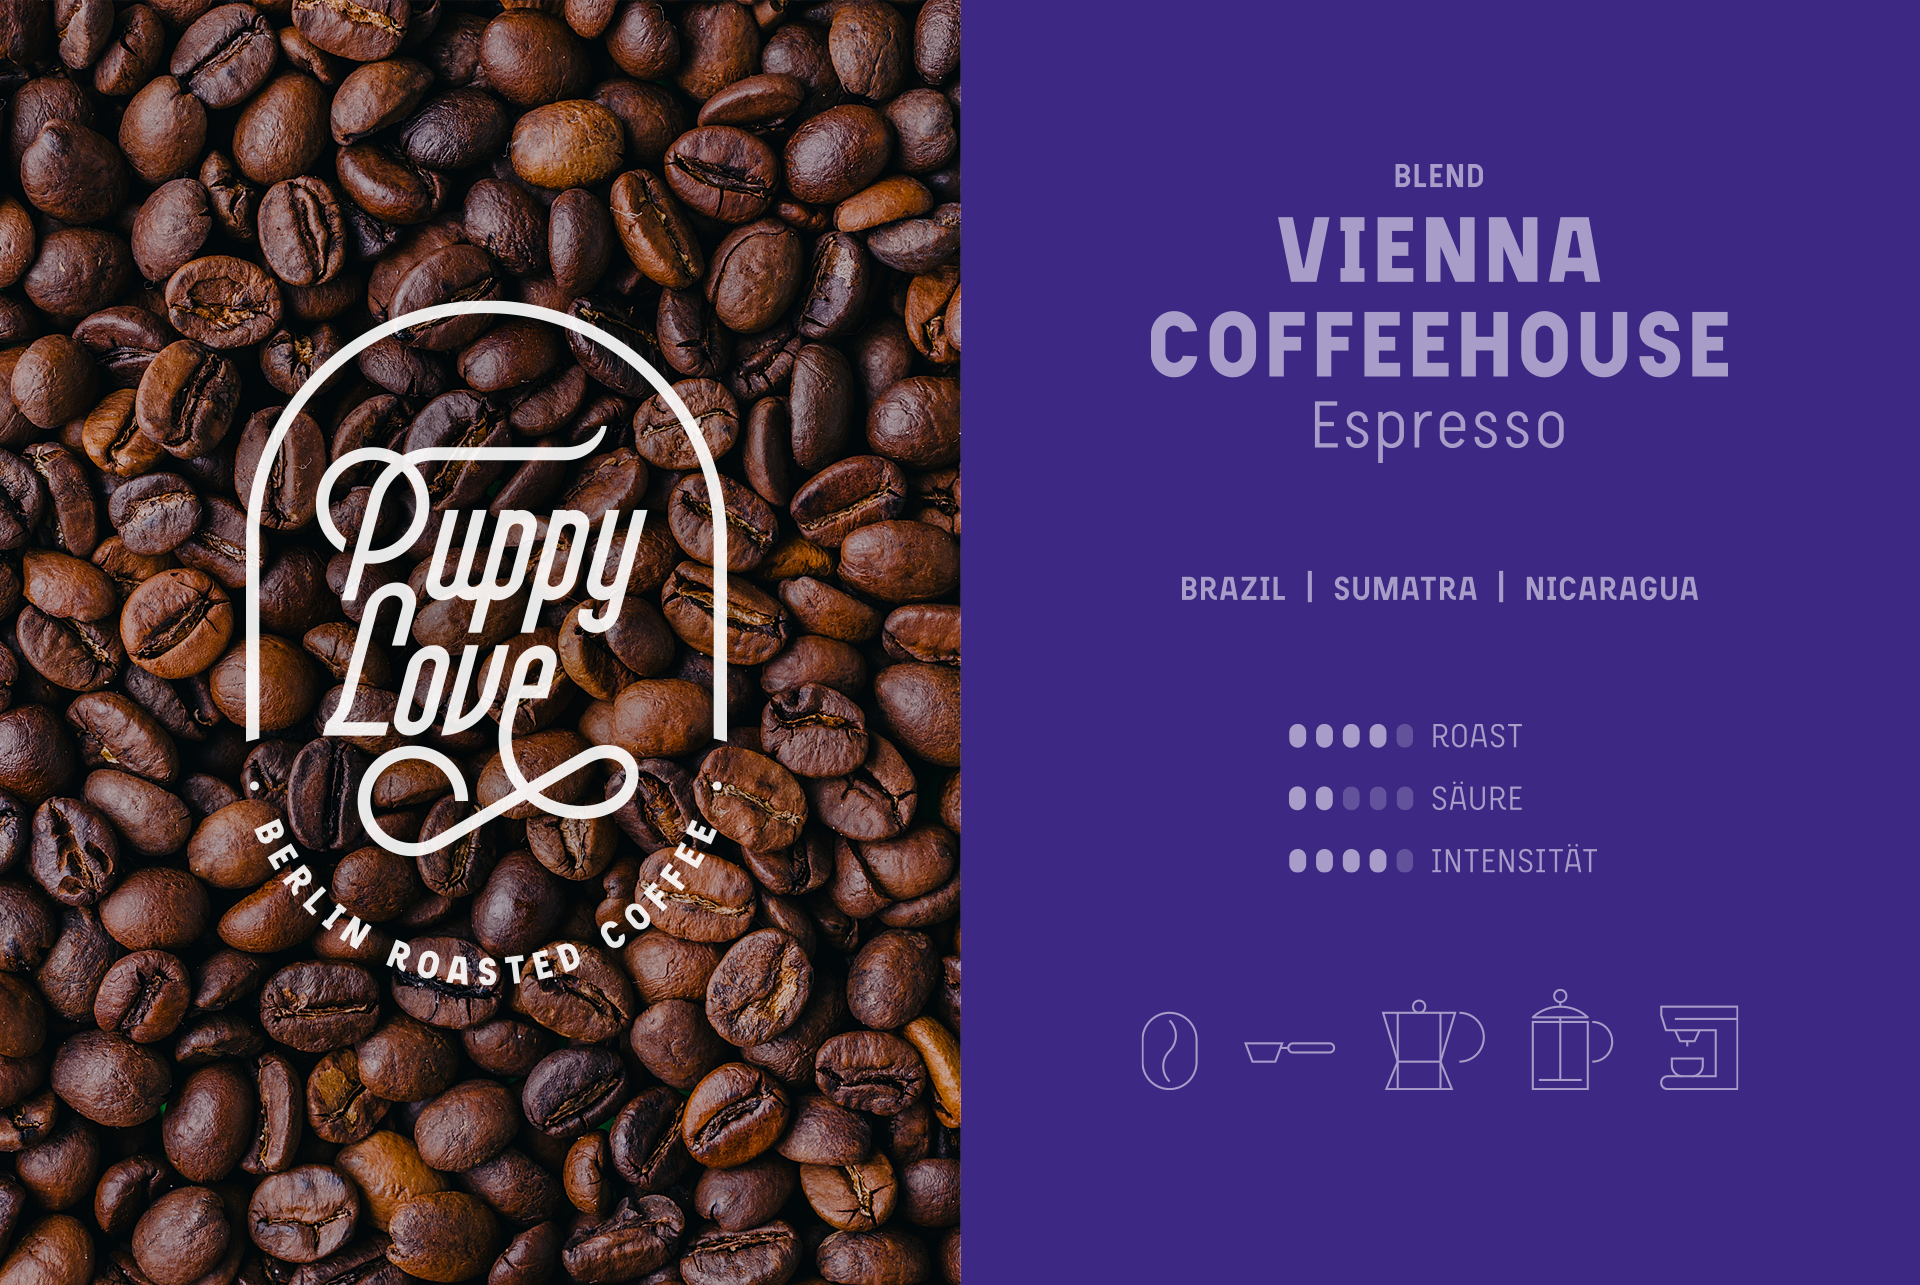 Vienna Coffeehouse Espresso Blend